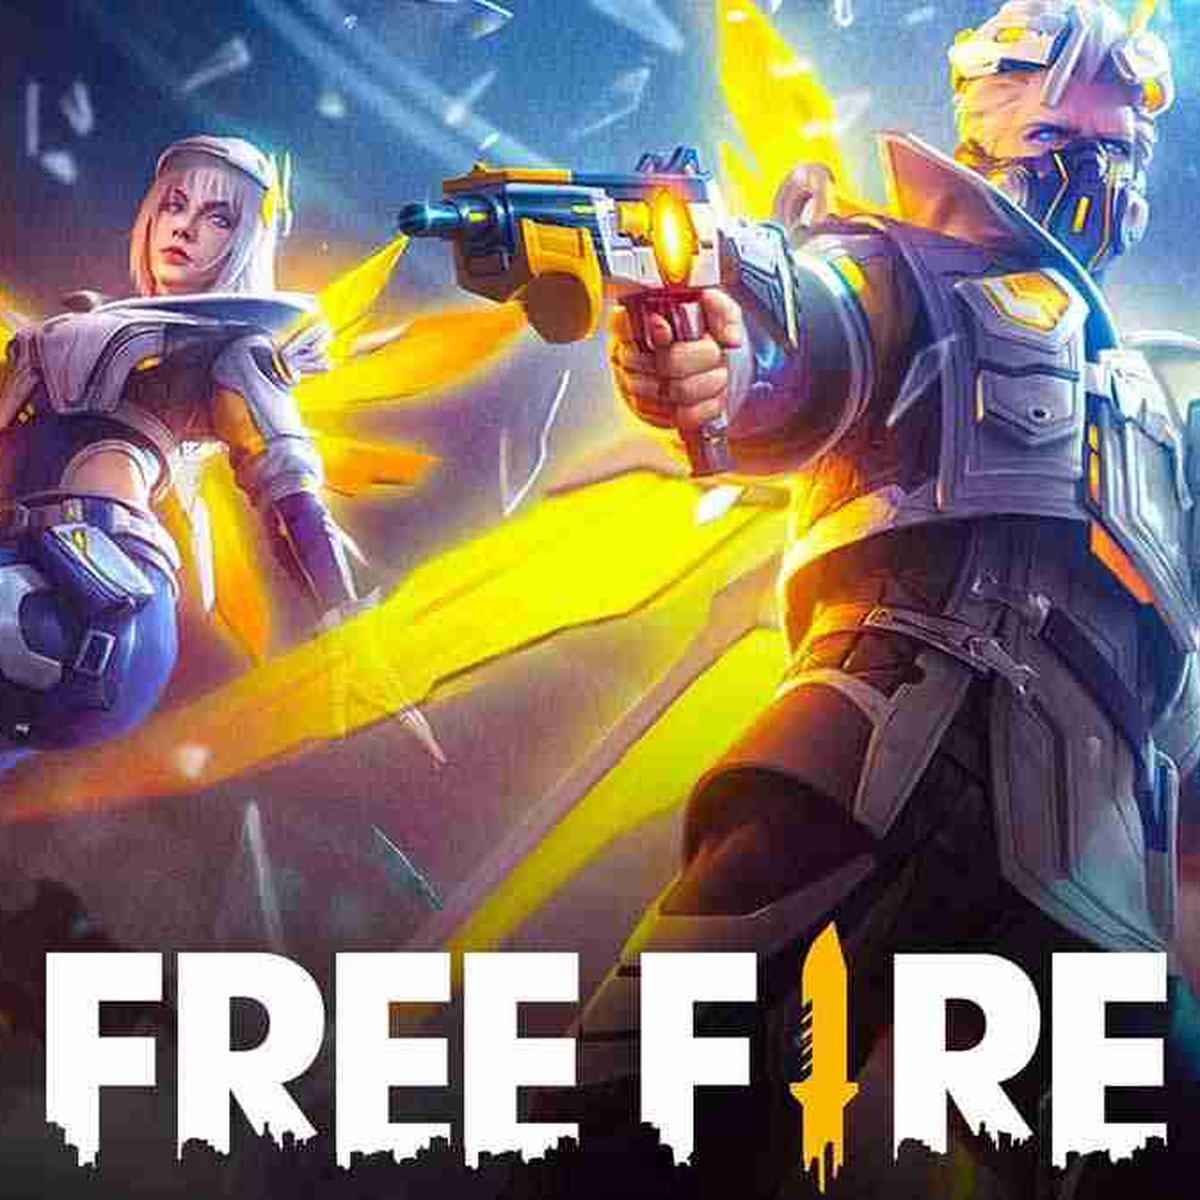 Free Fire: códigos de canje gratis del 20 de febrero de 2023